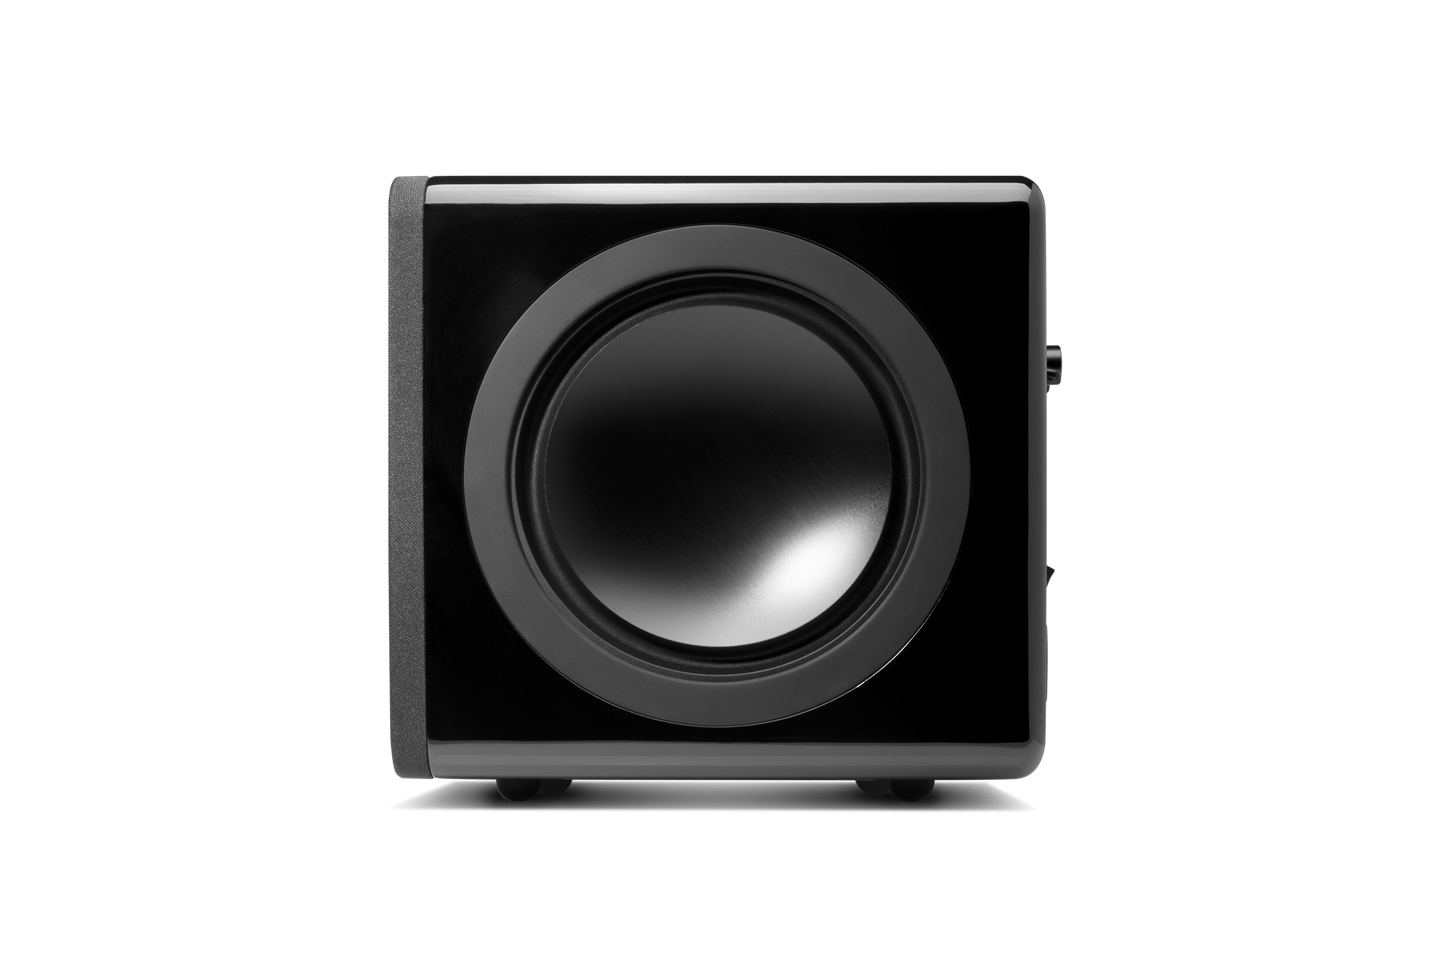 Minx X201-subwoofer-Cambridge Audio-PremiumHIFI